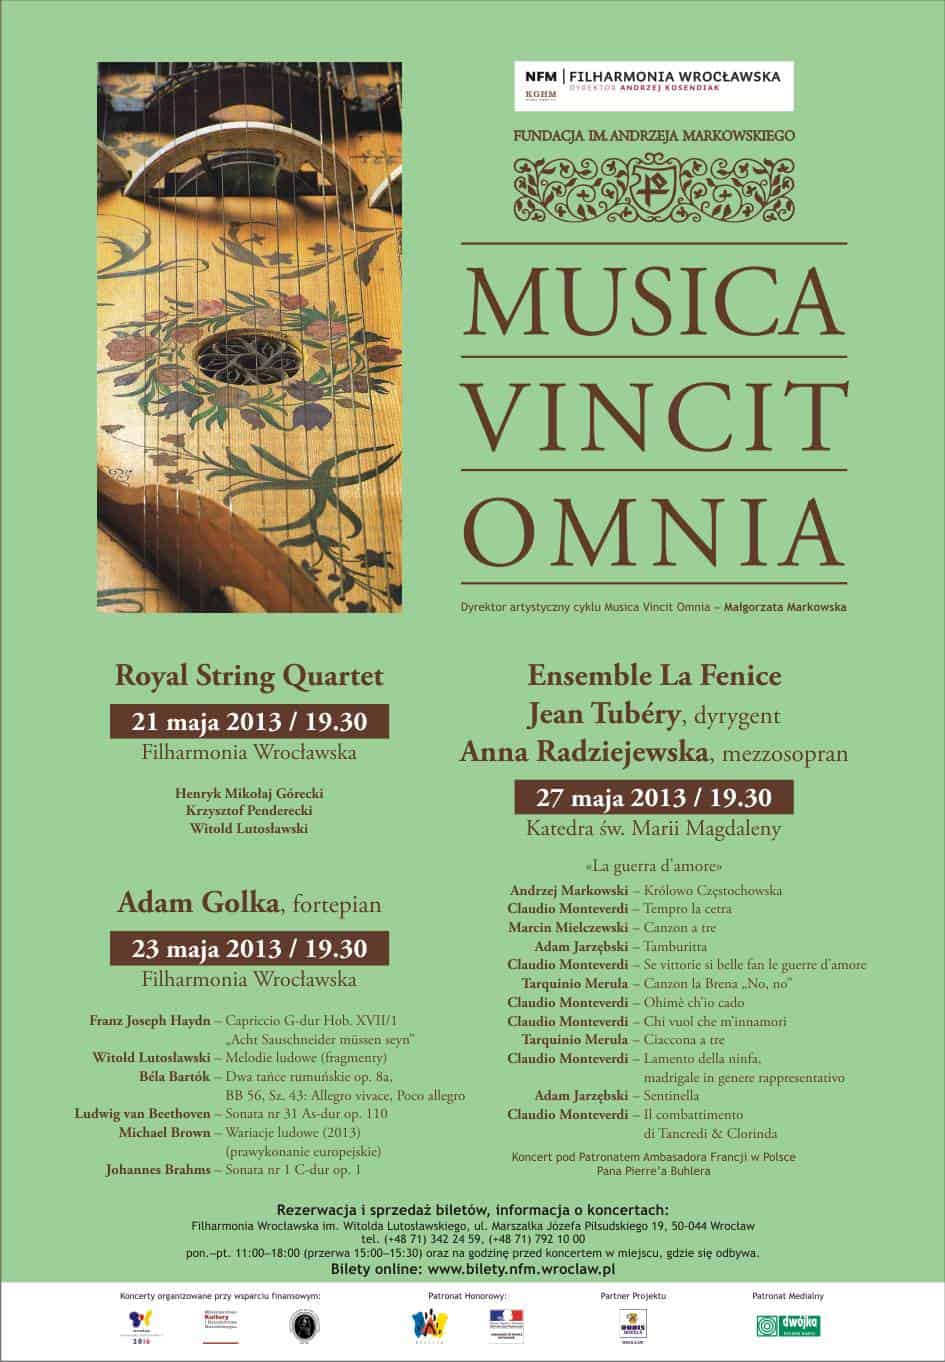 Royal String Quartet, Jean Tubery i La Fenice, Adam Golka - koncerty w ramach cyklu Musica Vincit Omnia!